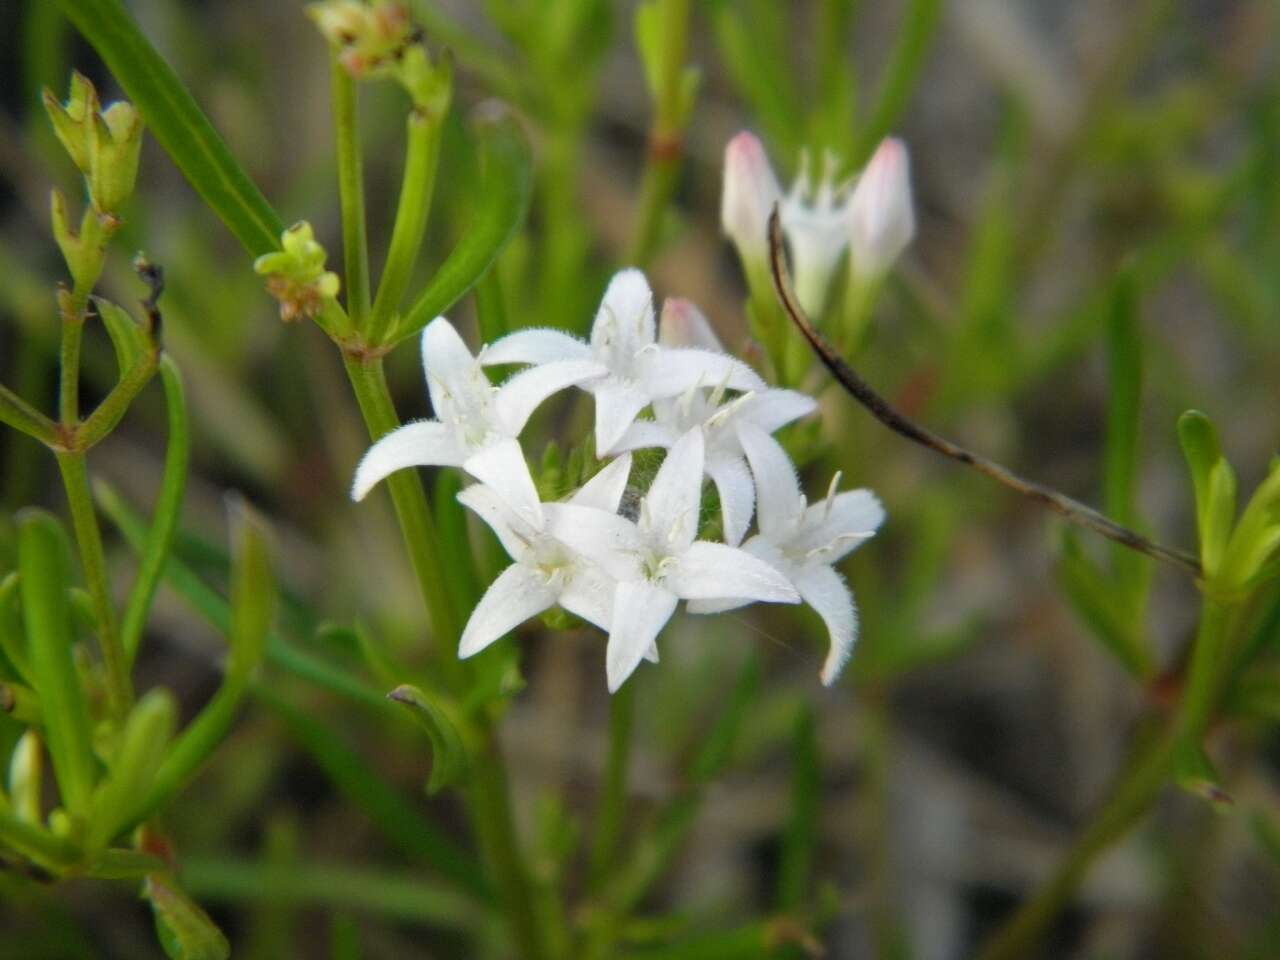 Image of diamond-flowers